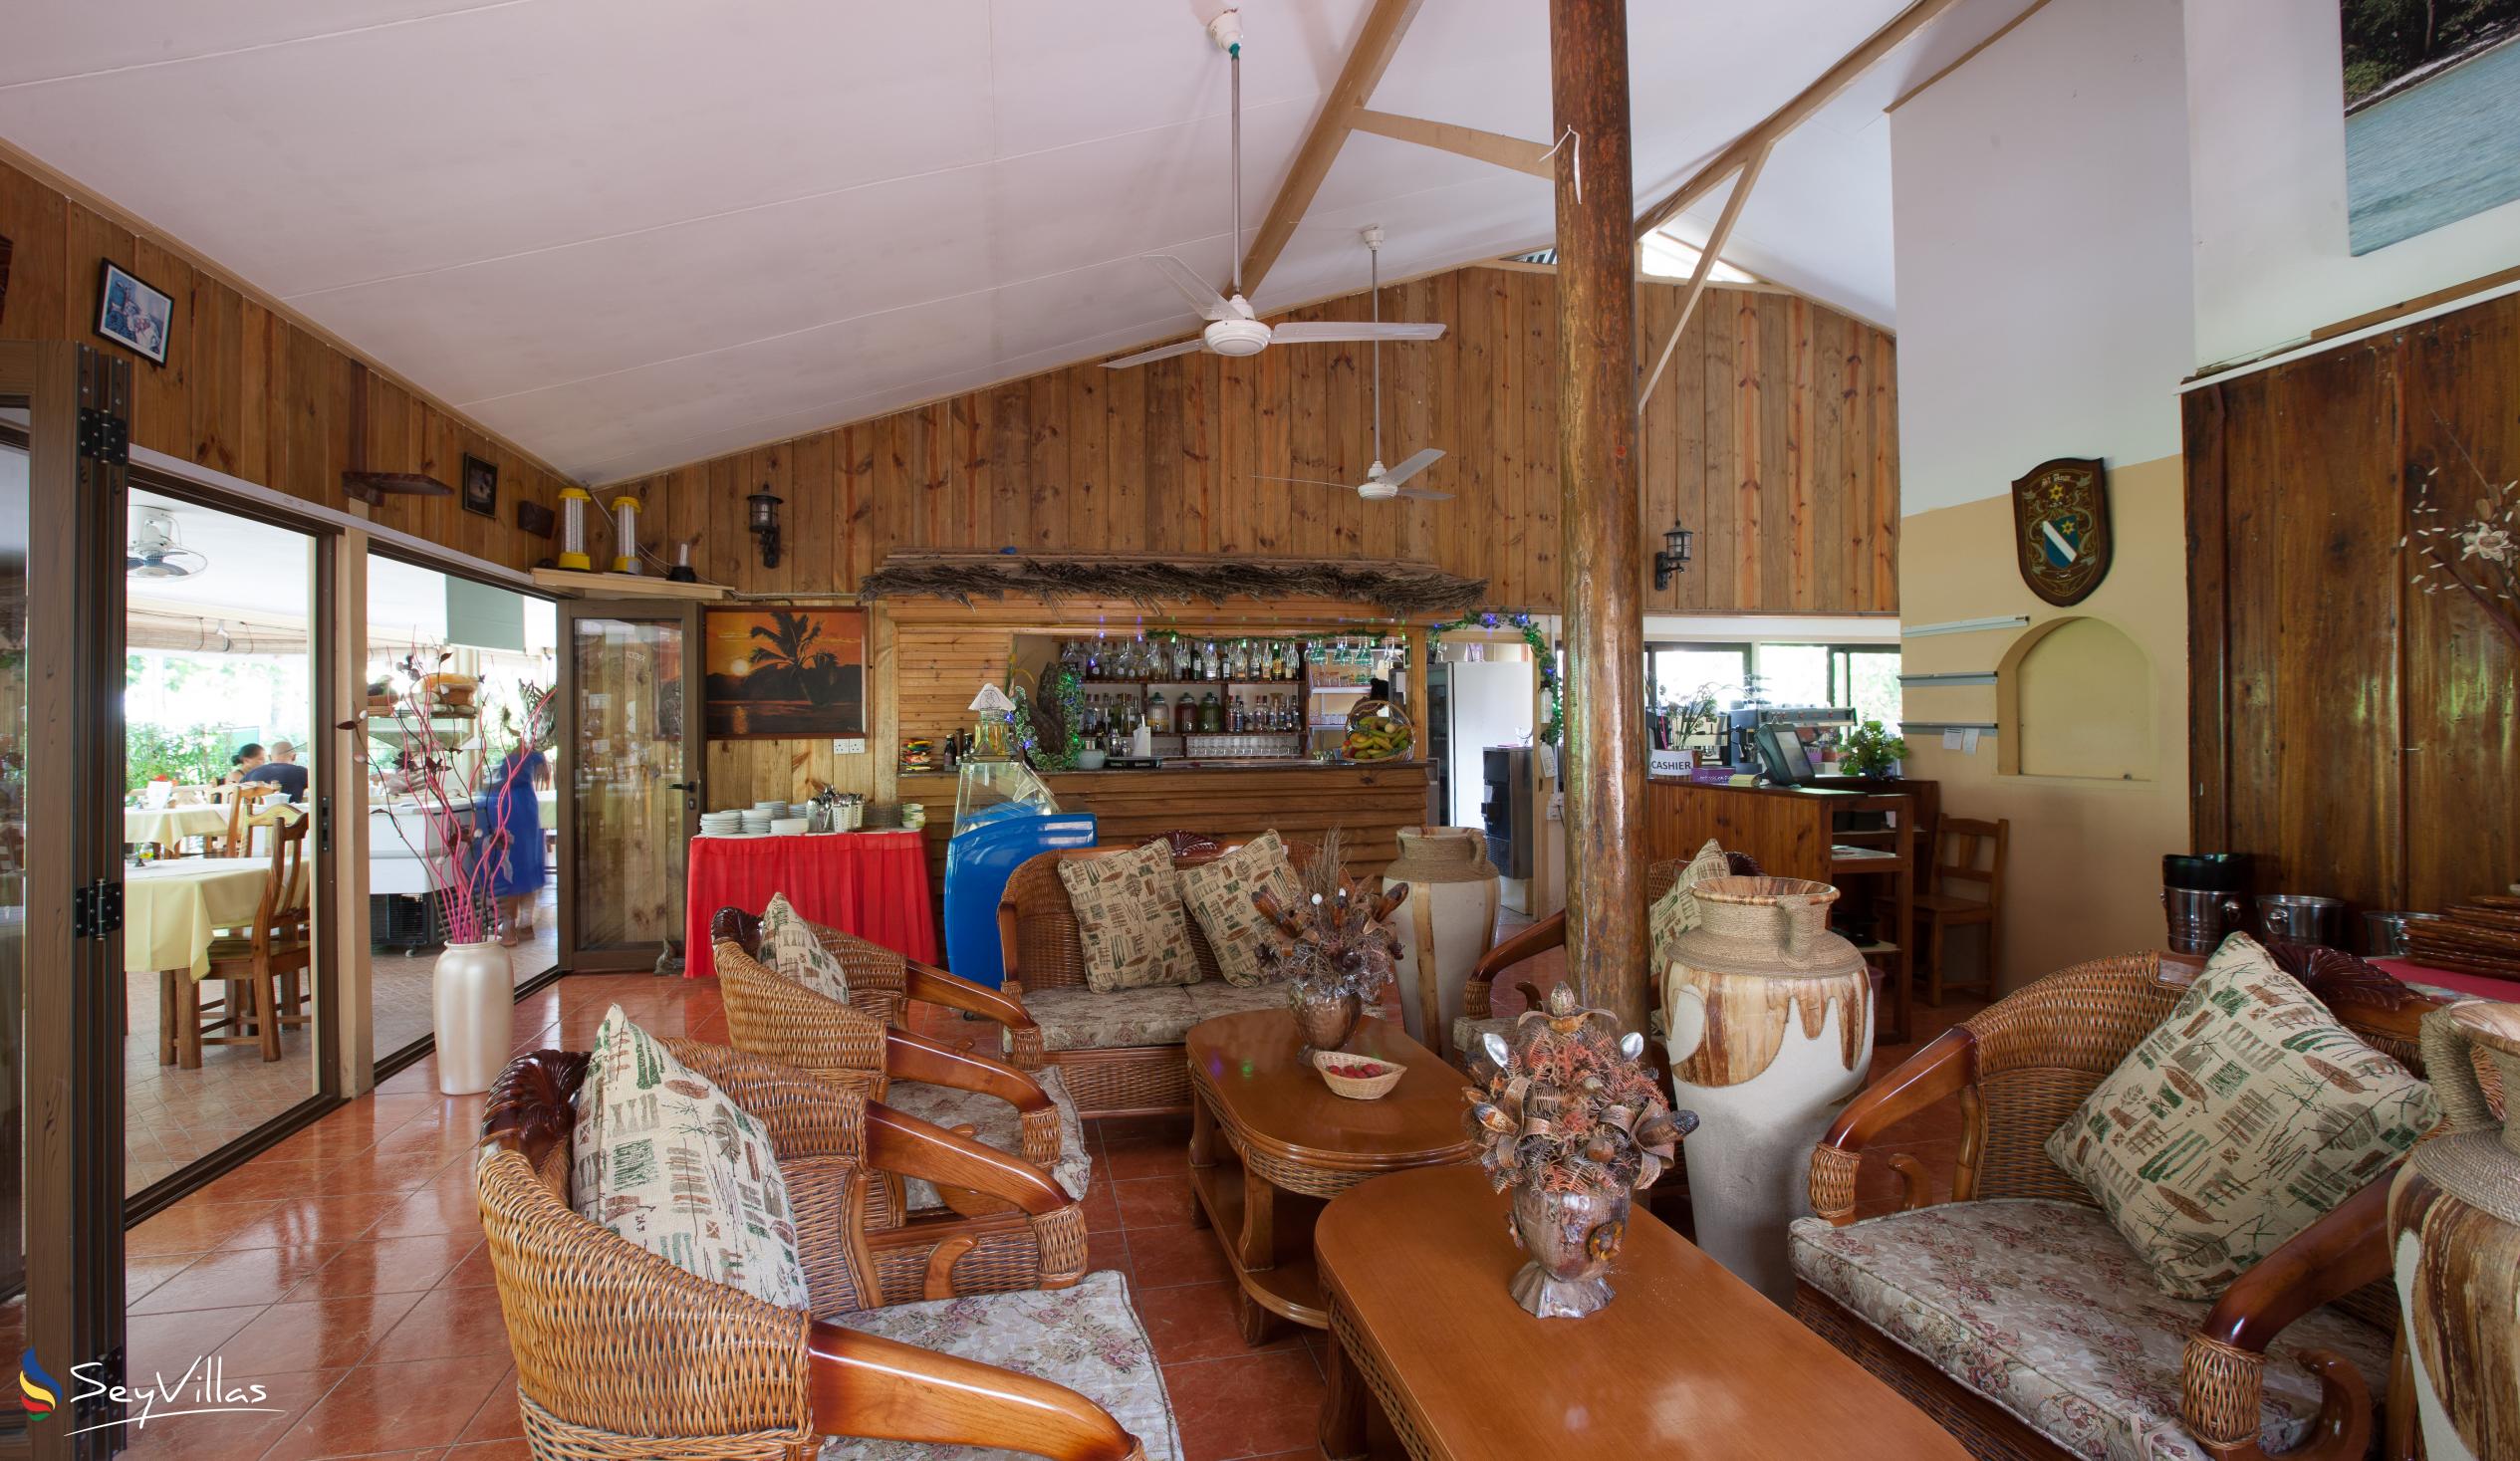 Foto 16: Chez Marston - Innenbereich - La Digue (Seychellen)